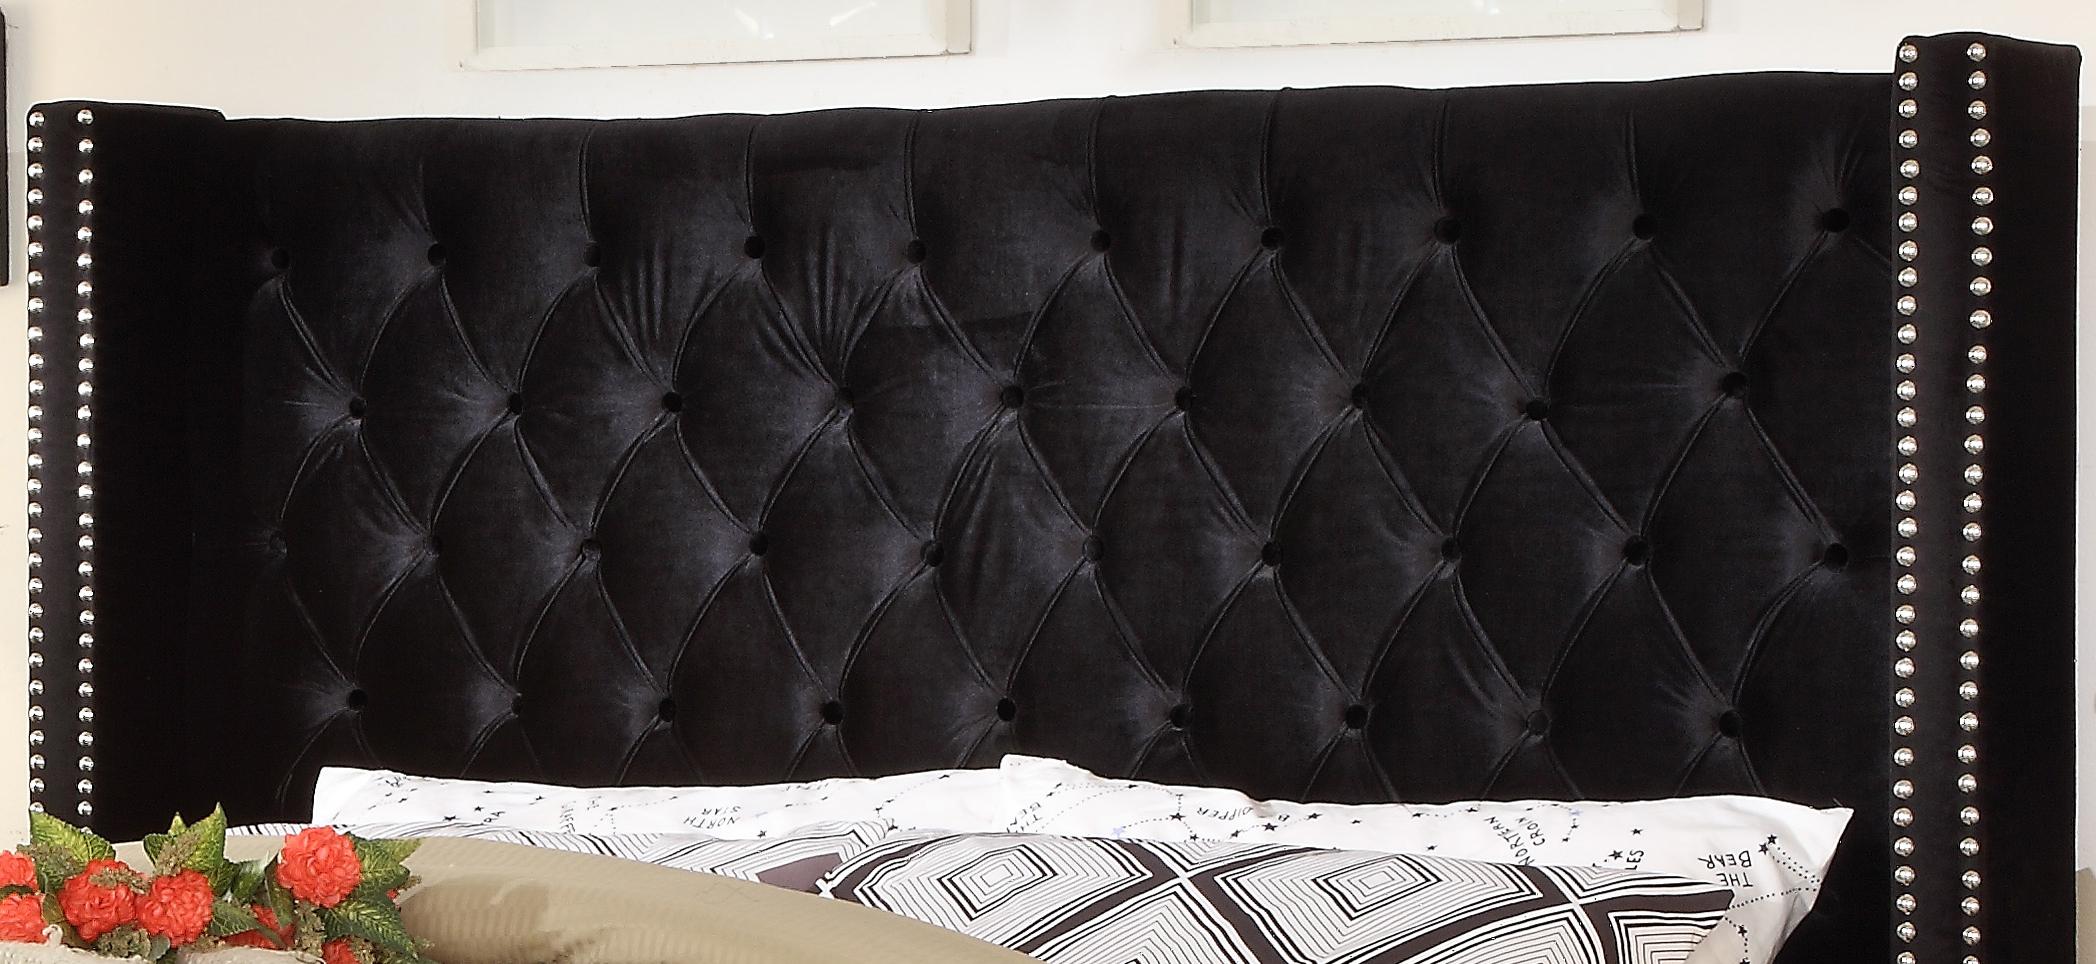 

    
Meridian Furniture AidenBlack-K Platform Bed Black AidenBlack-K
